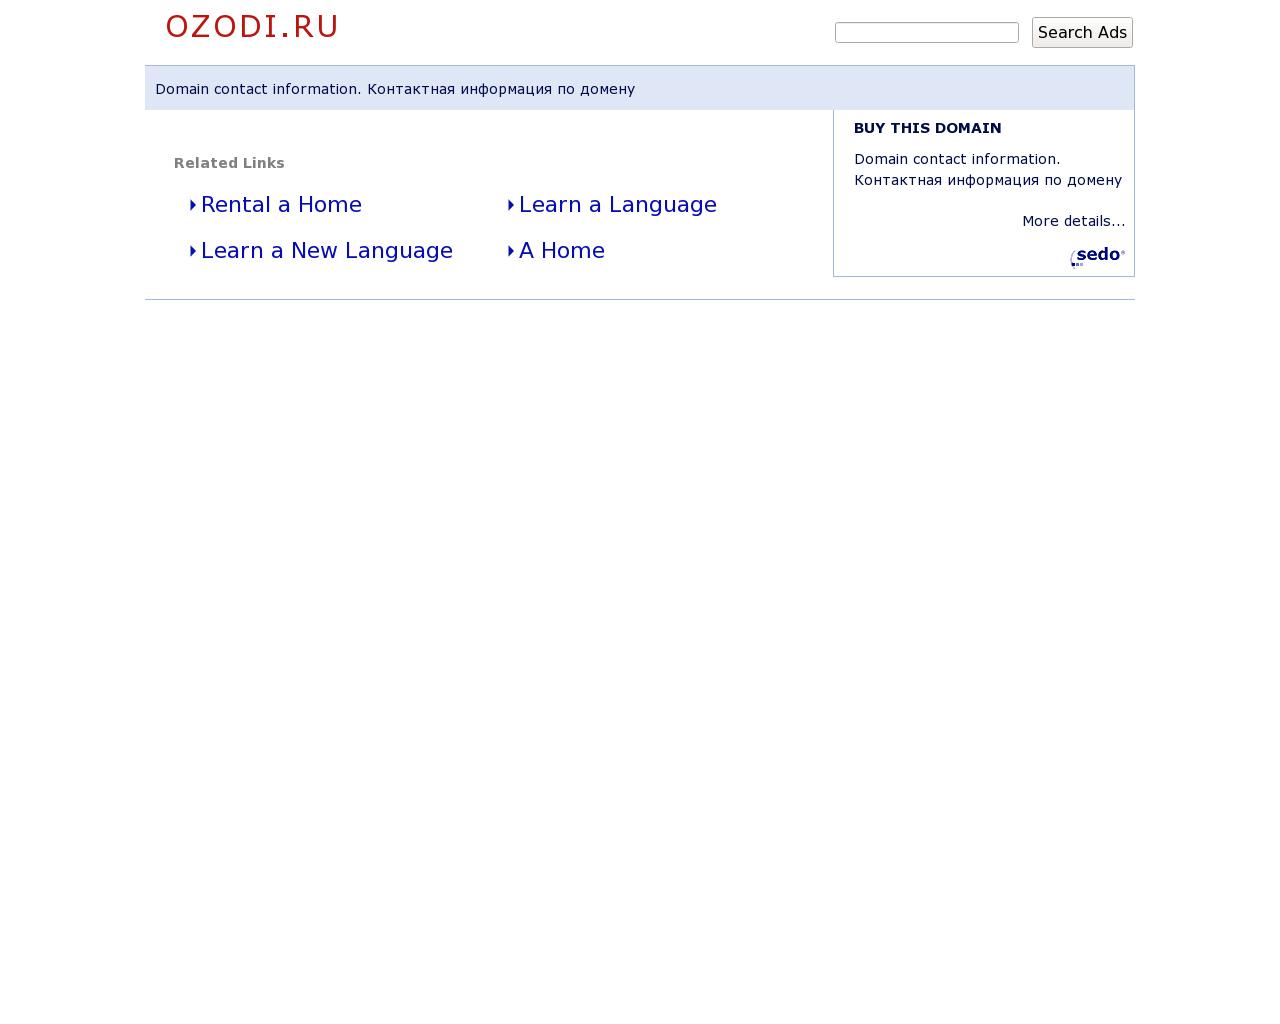 Изображение сайта ozodi.ru в разрешении 1280x1024